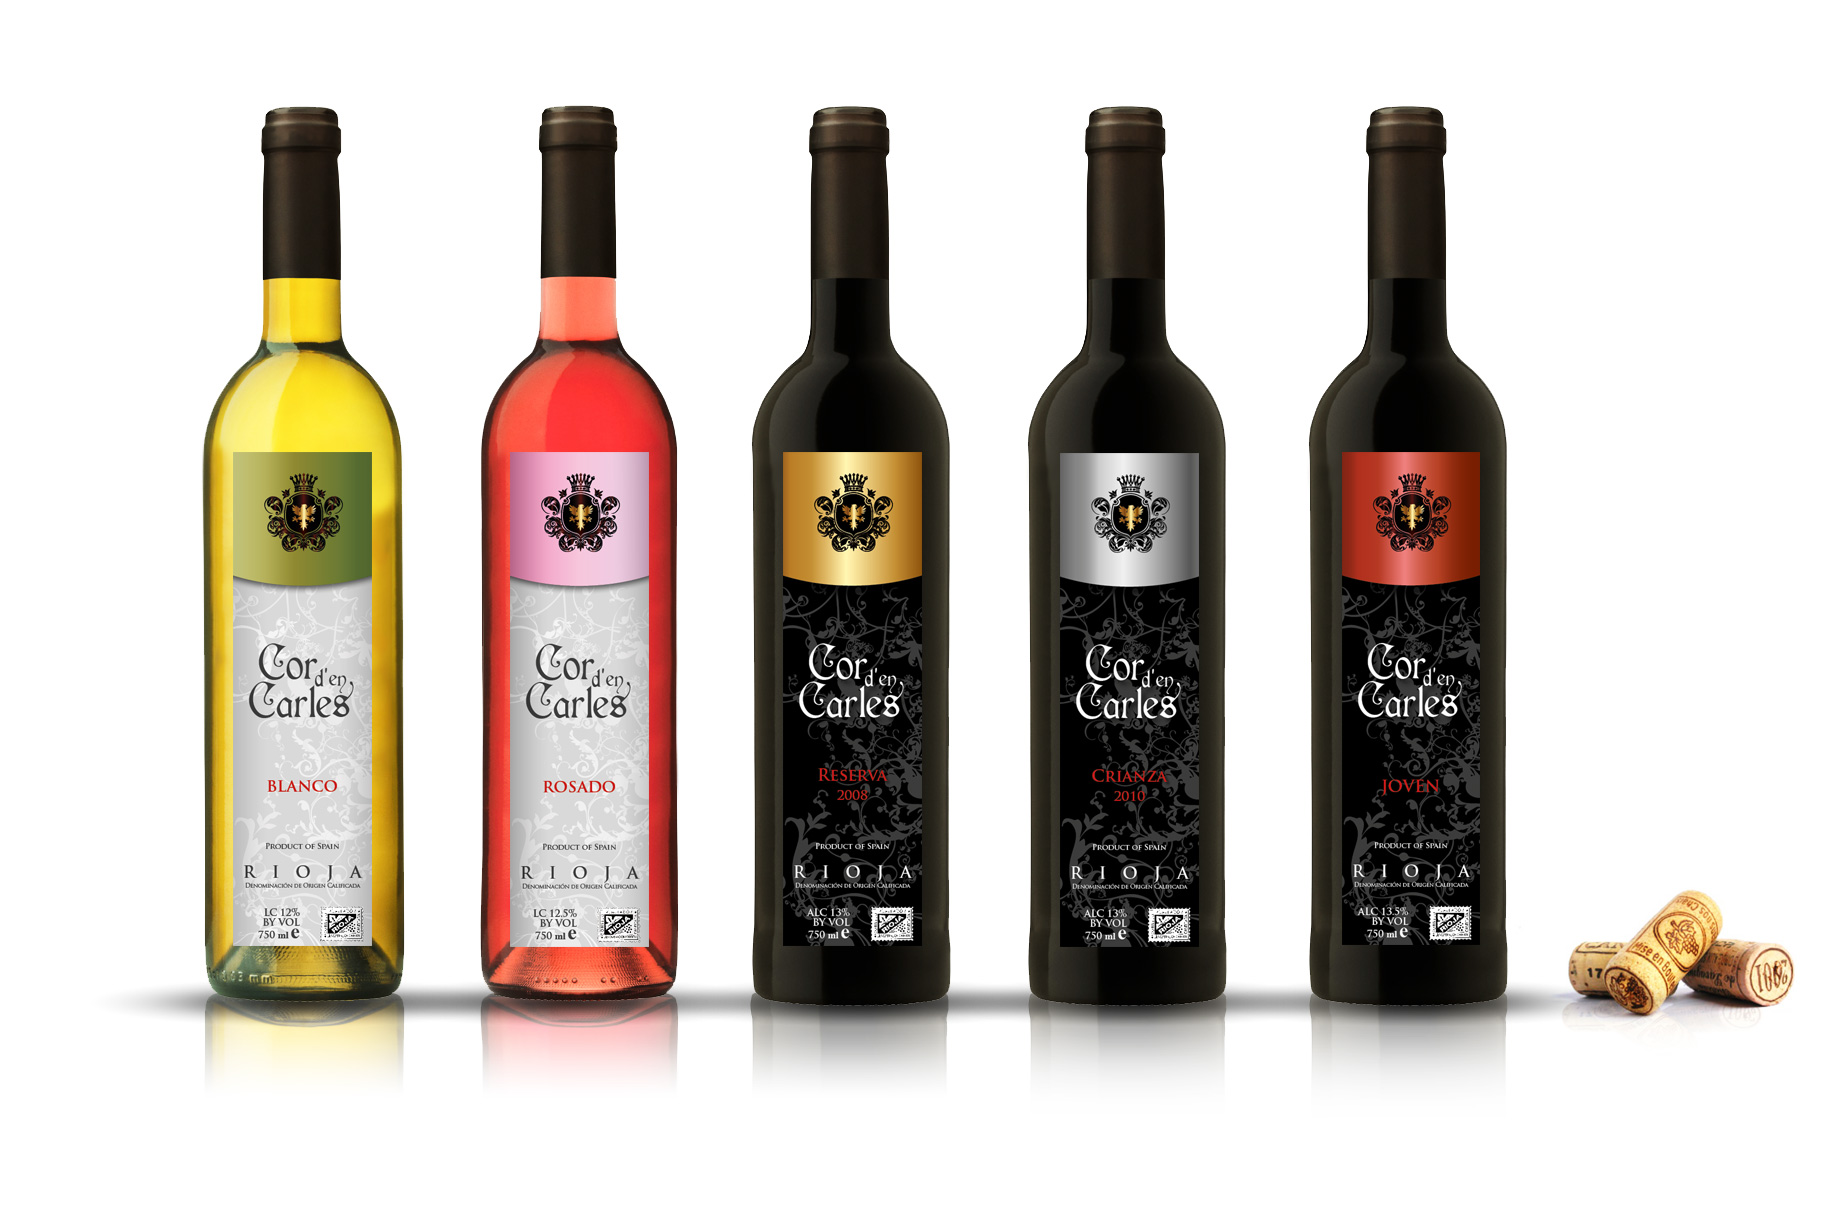 Diseño gráfico y creativo de etiquetas y packaging de vino para Bodegas en España y exportación a China